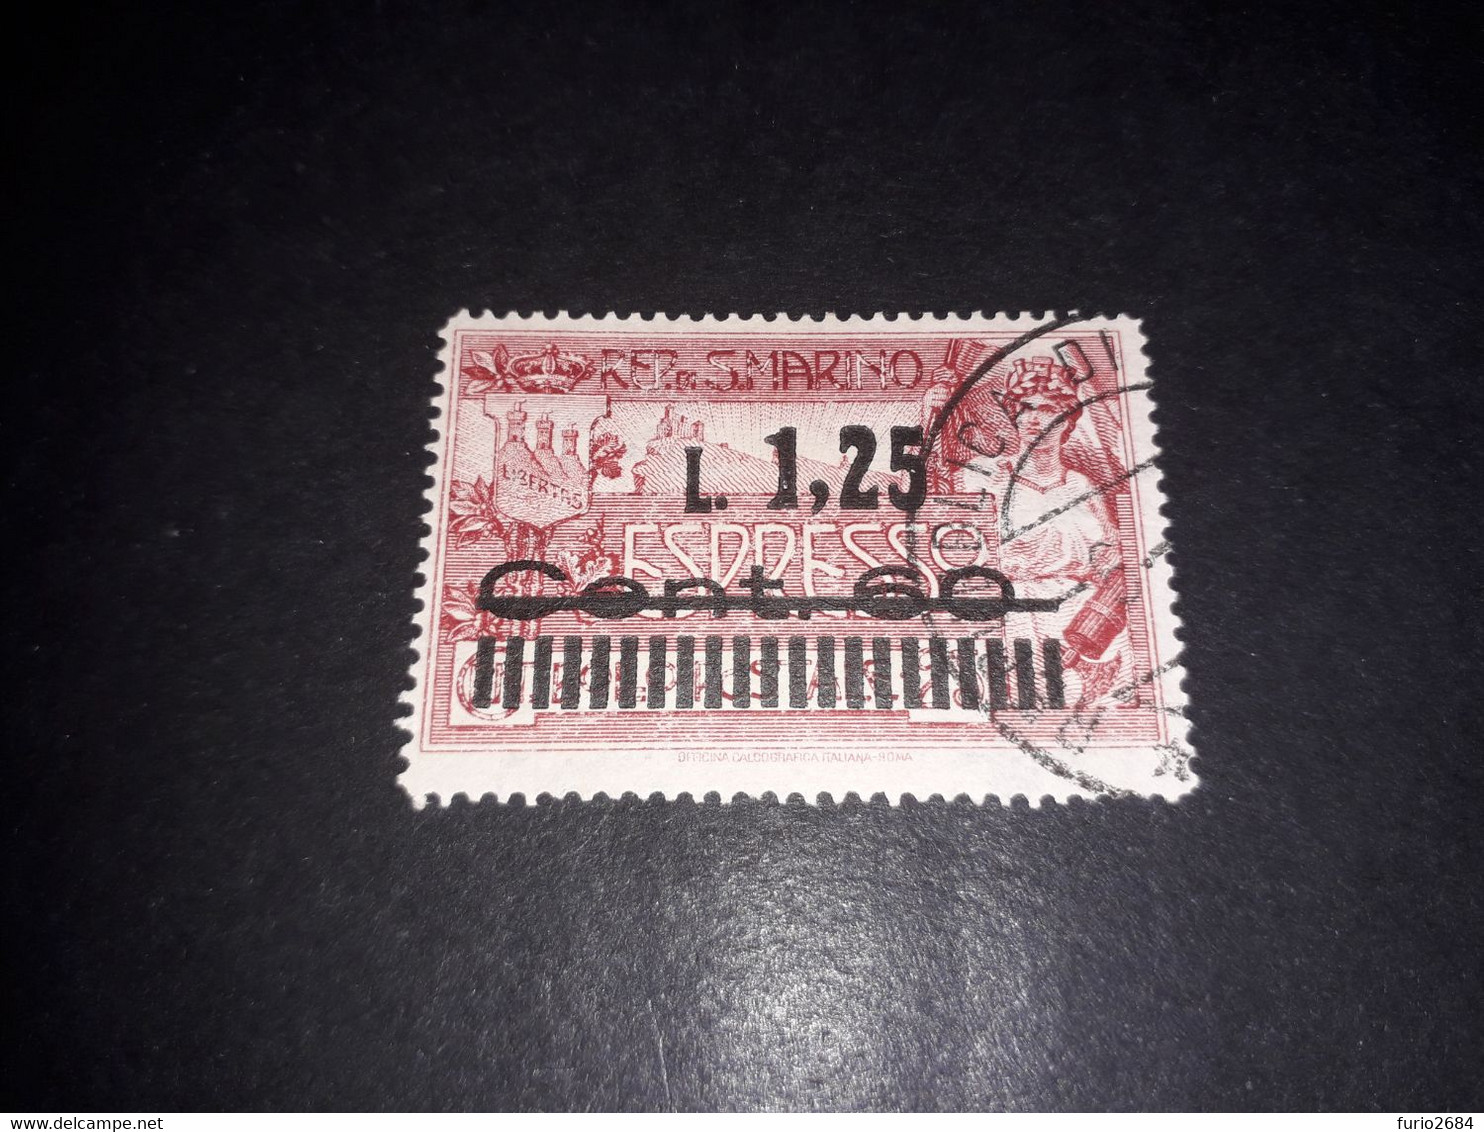 01AL11 REPUB. DI SAN MARINO 1927 ESPRESSO DEL 1933 SOPRASTAMPATO LIRE 1,25 "O" - Used Stamps